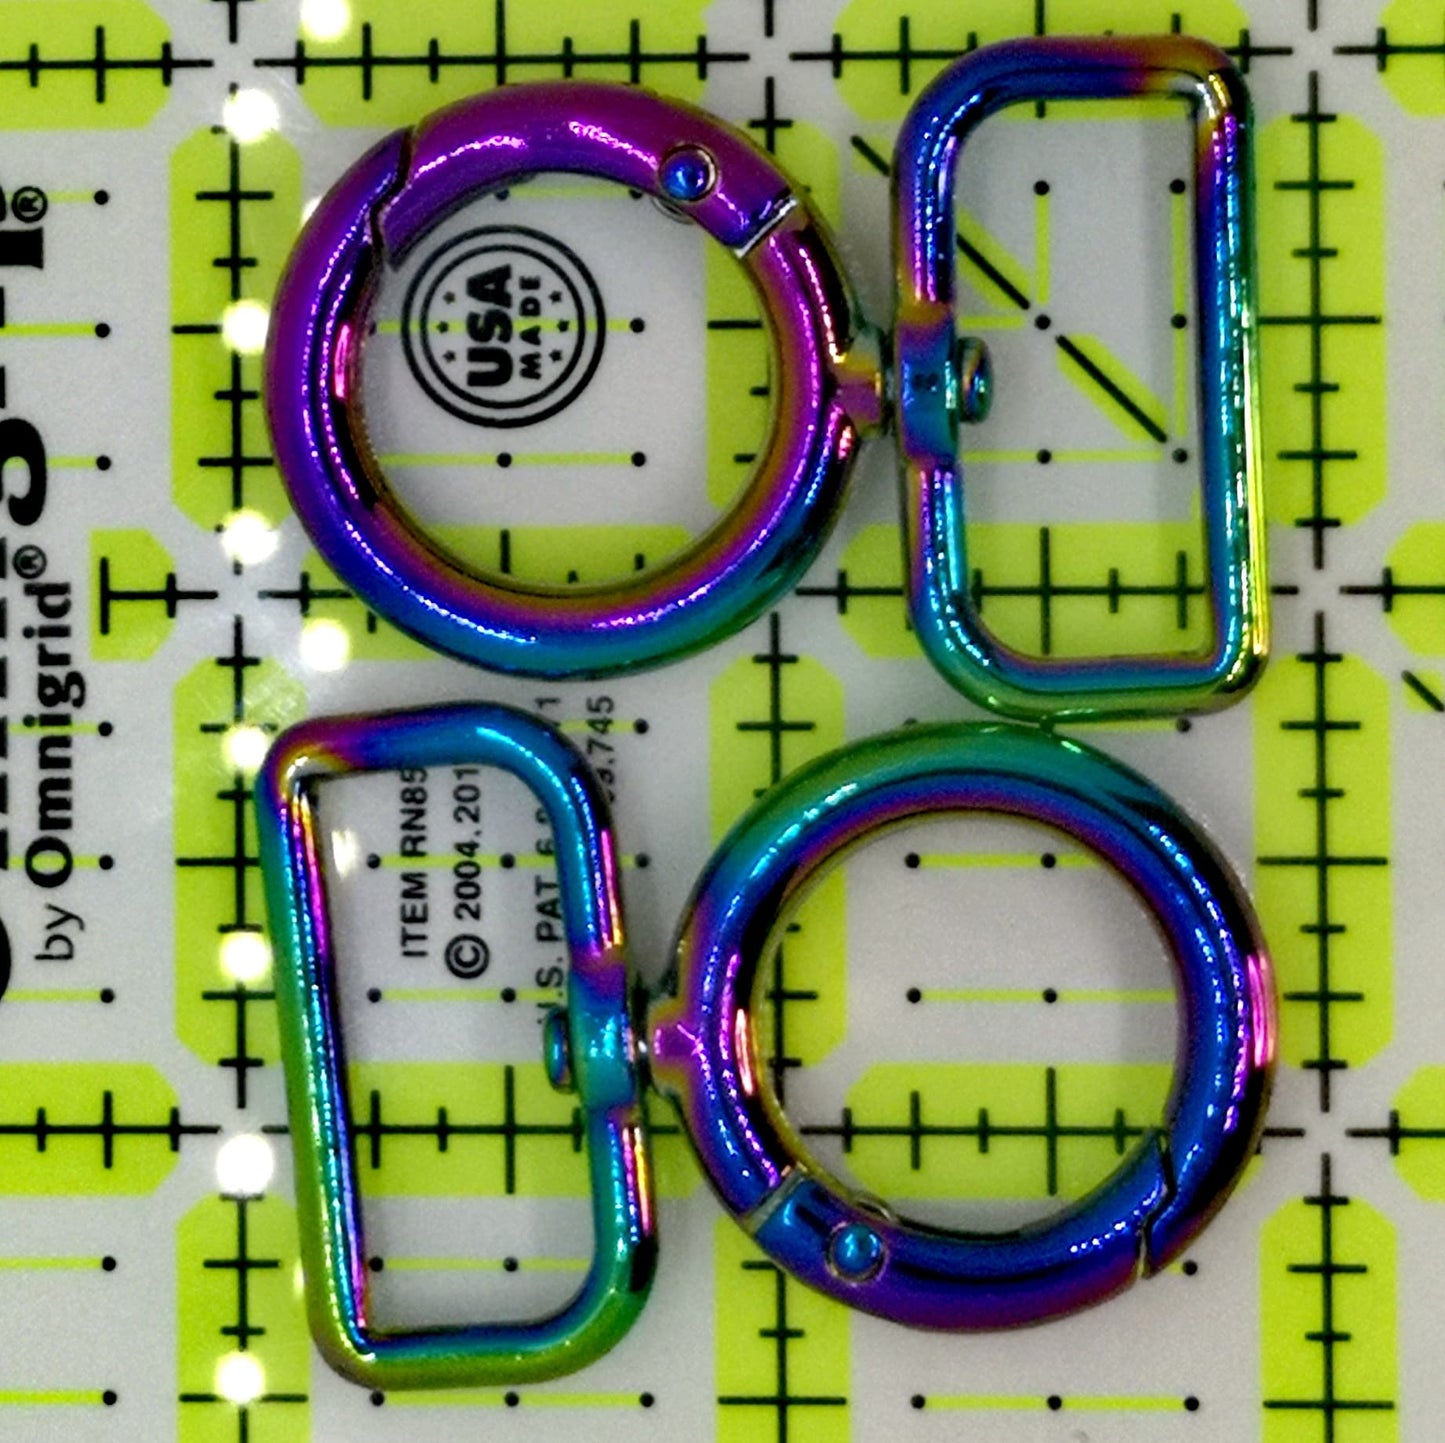 1" Rainbow Gated O-Ring Swivel Hook set of 2